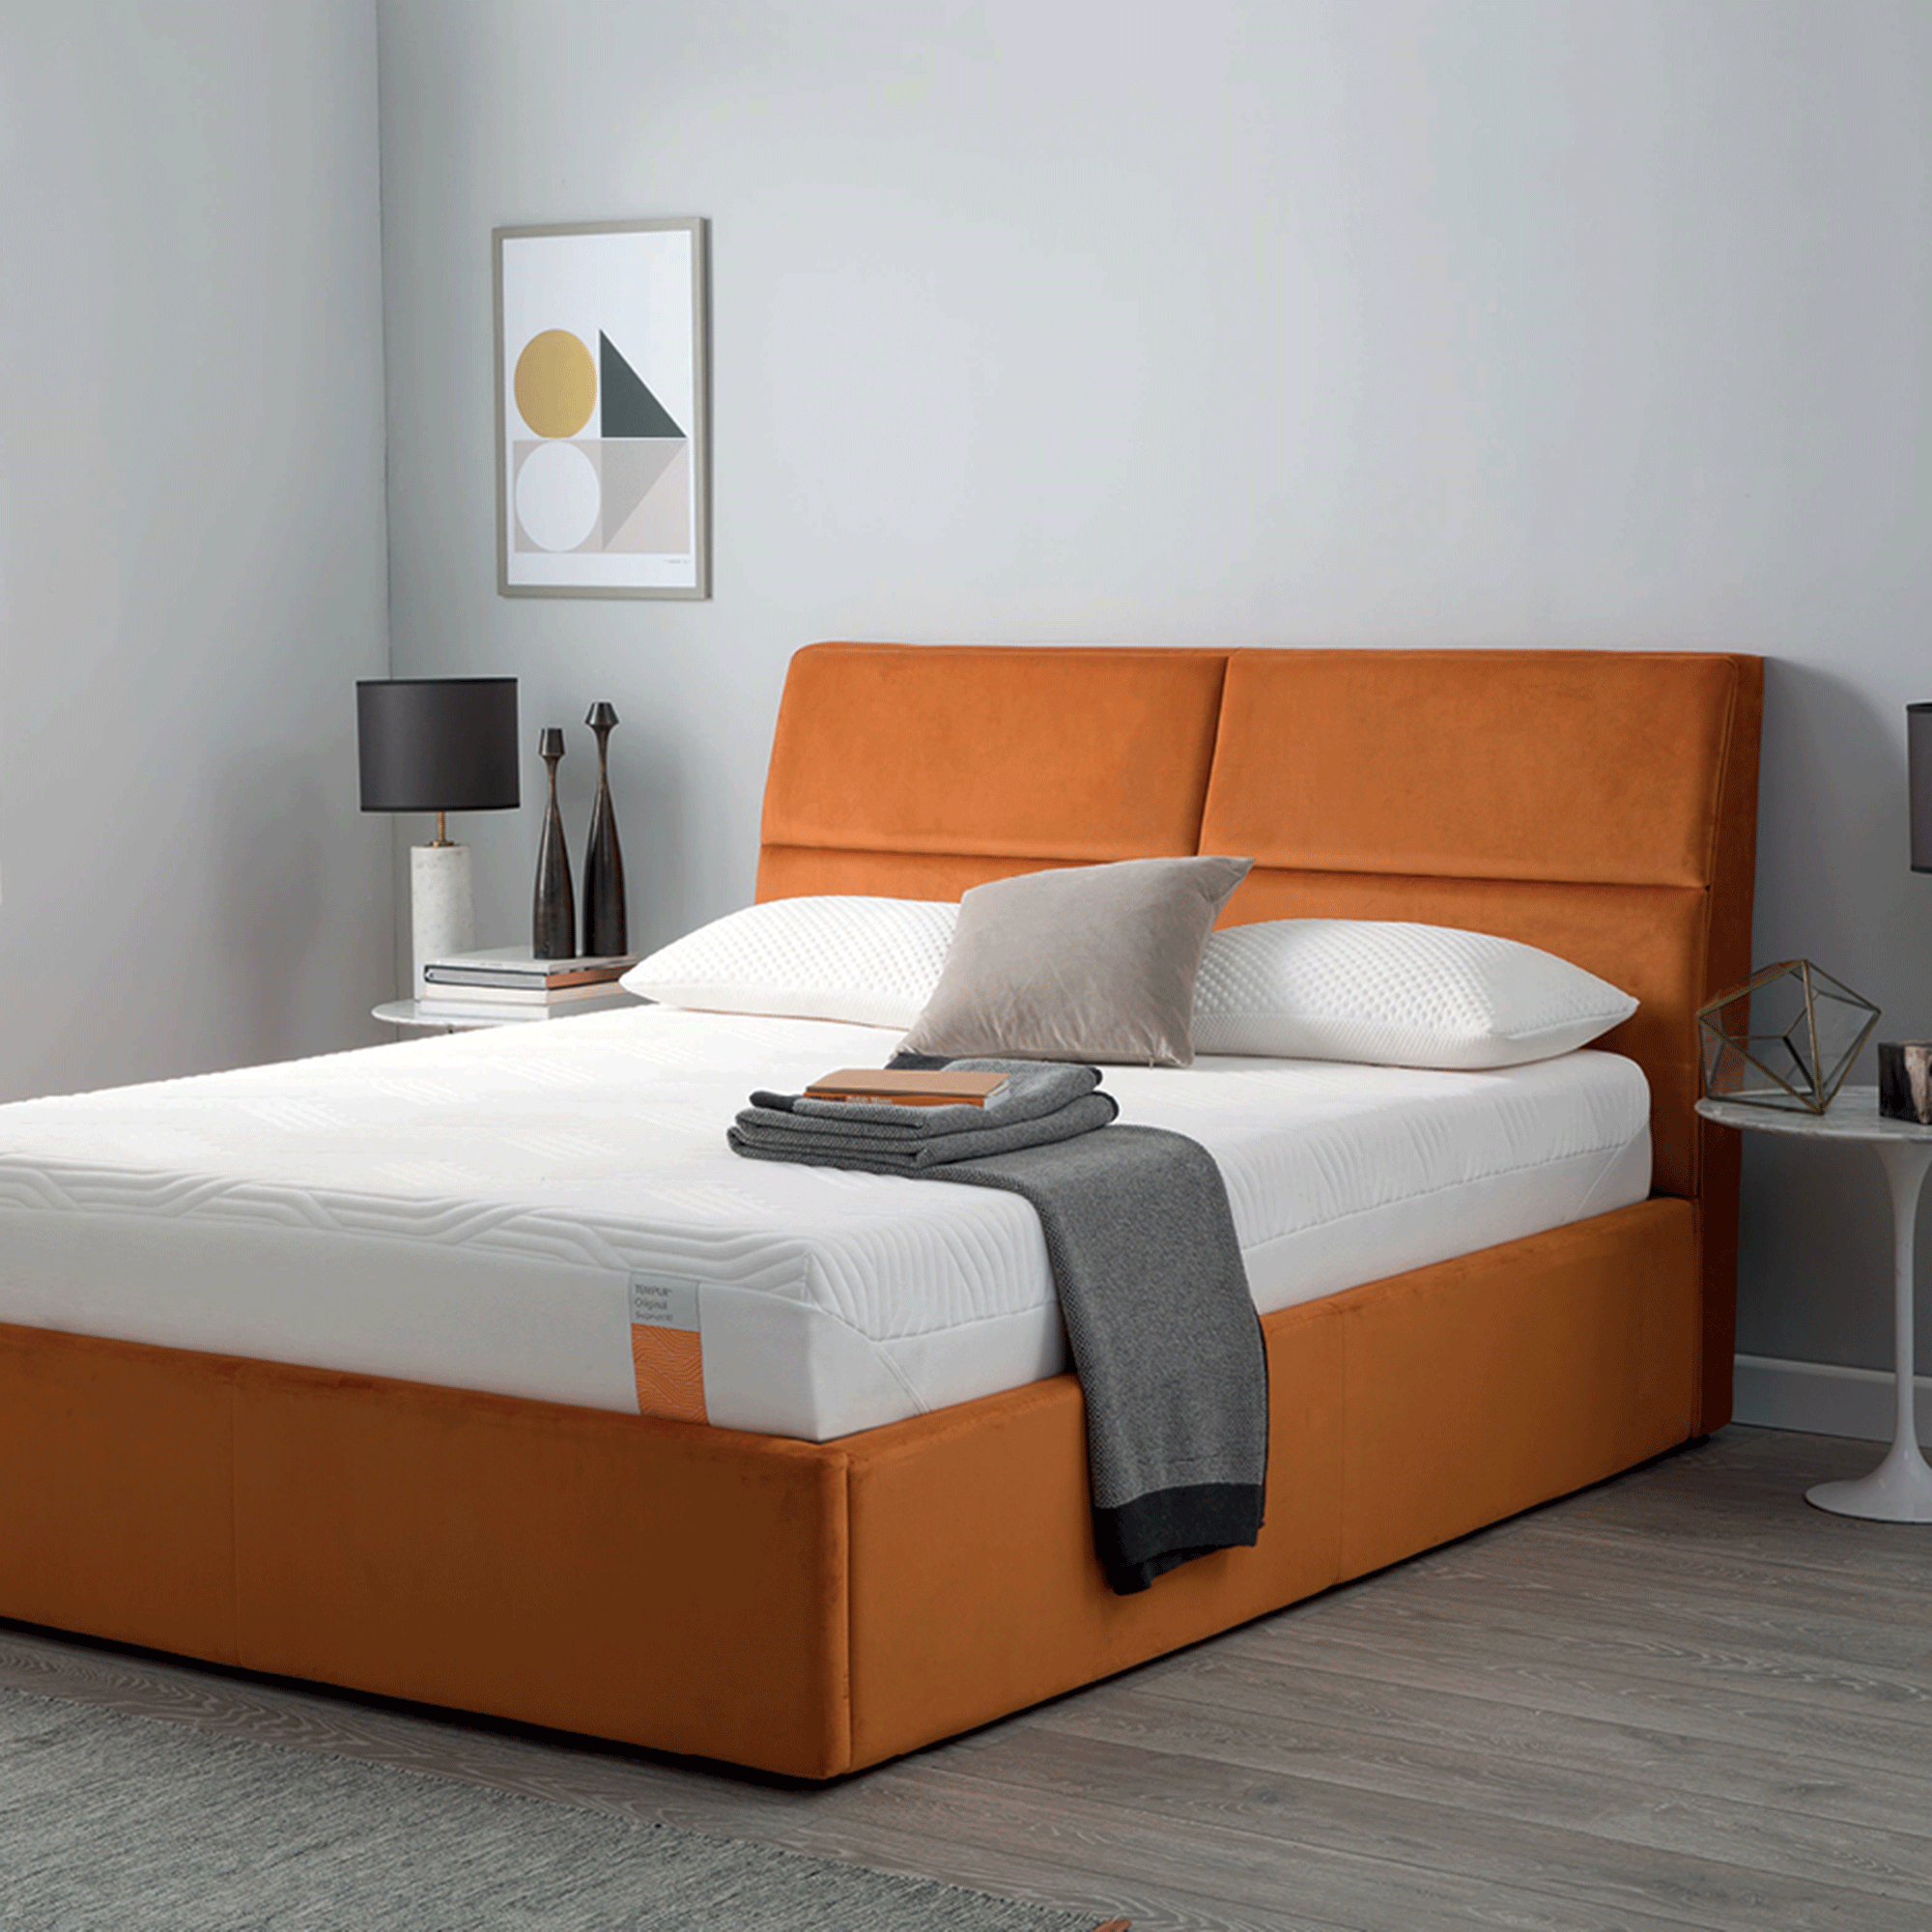 Orange ottoman bed with mattress